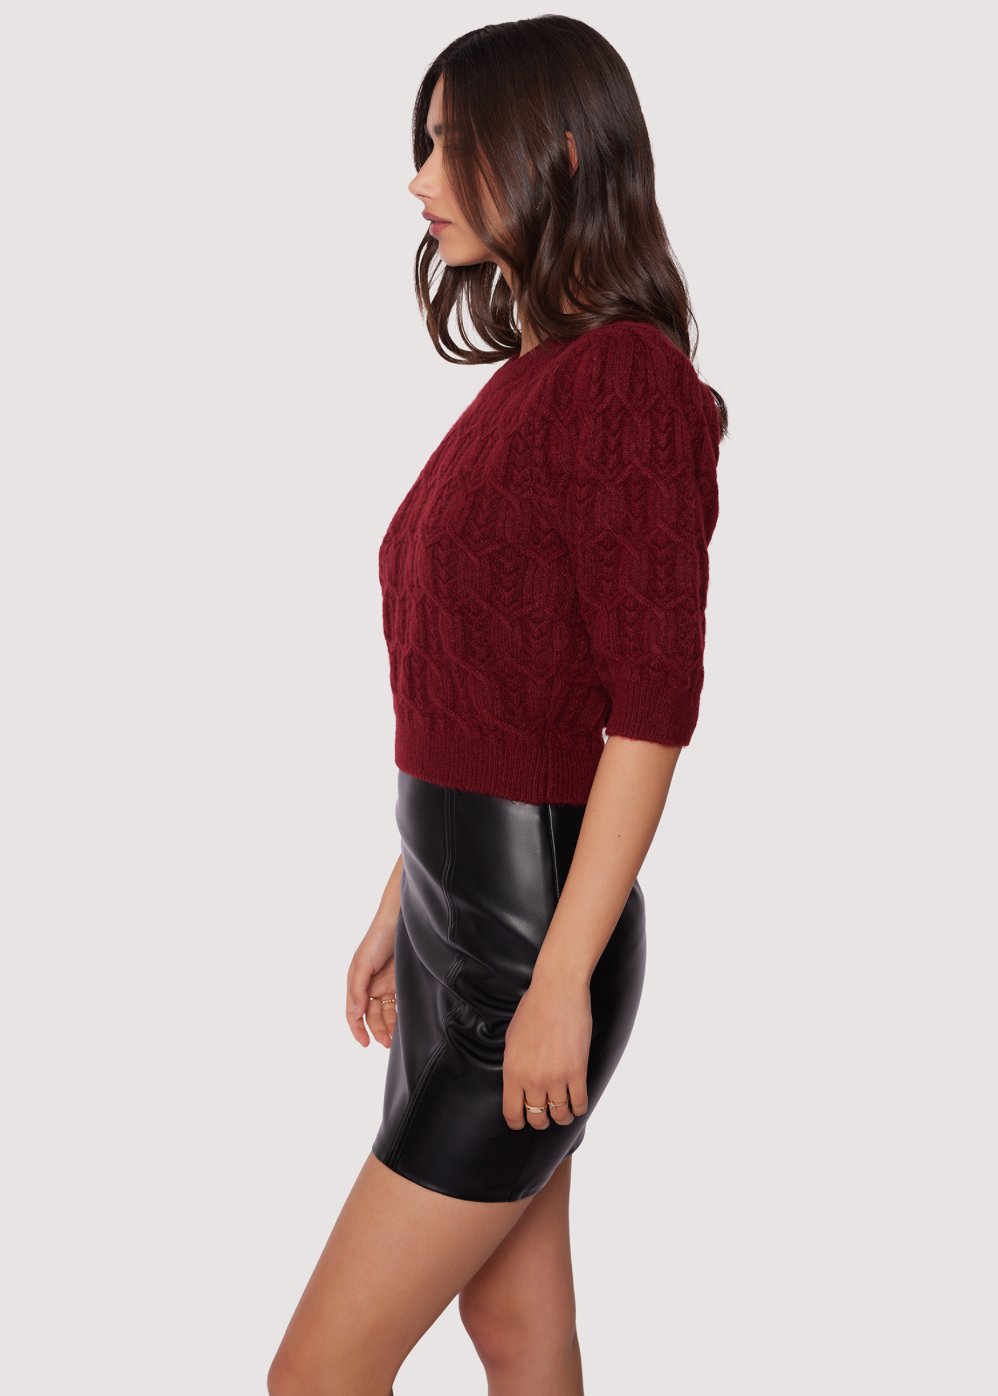 Sydney Short Sleeve Sweater - Addie Rose Boutique - Austin